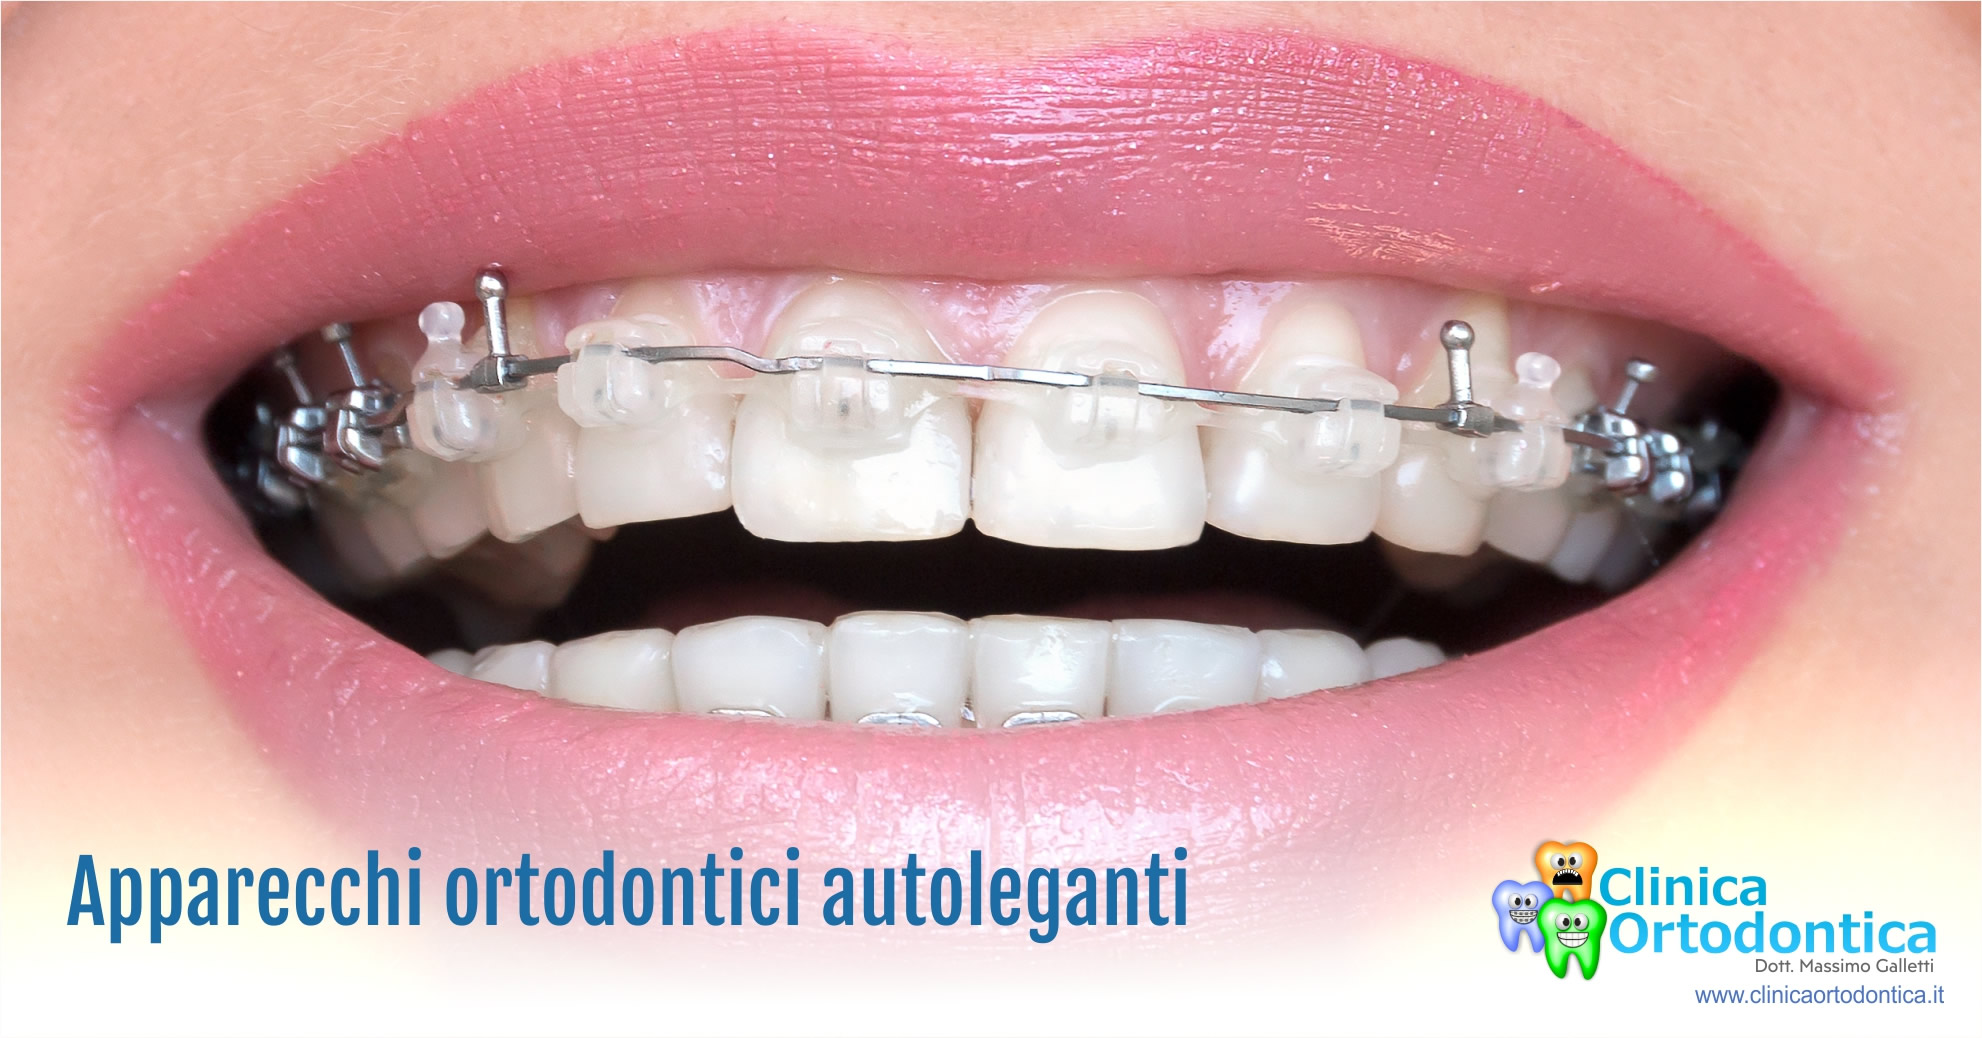 Apparecchi ortodontici autoleganti, Clinica Ortodontica del Dott. Massimo  Galletti